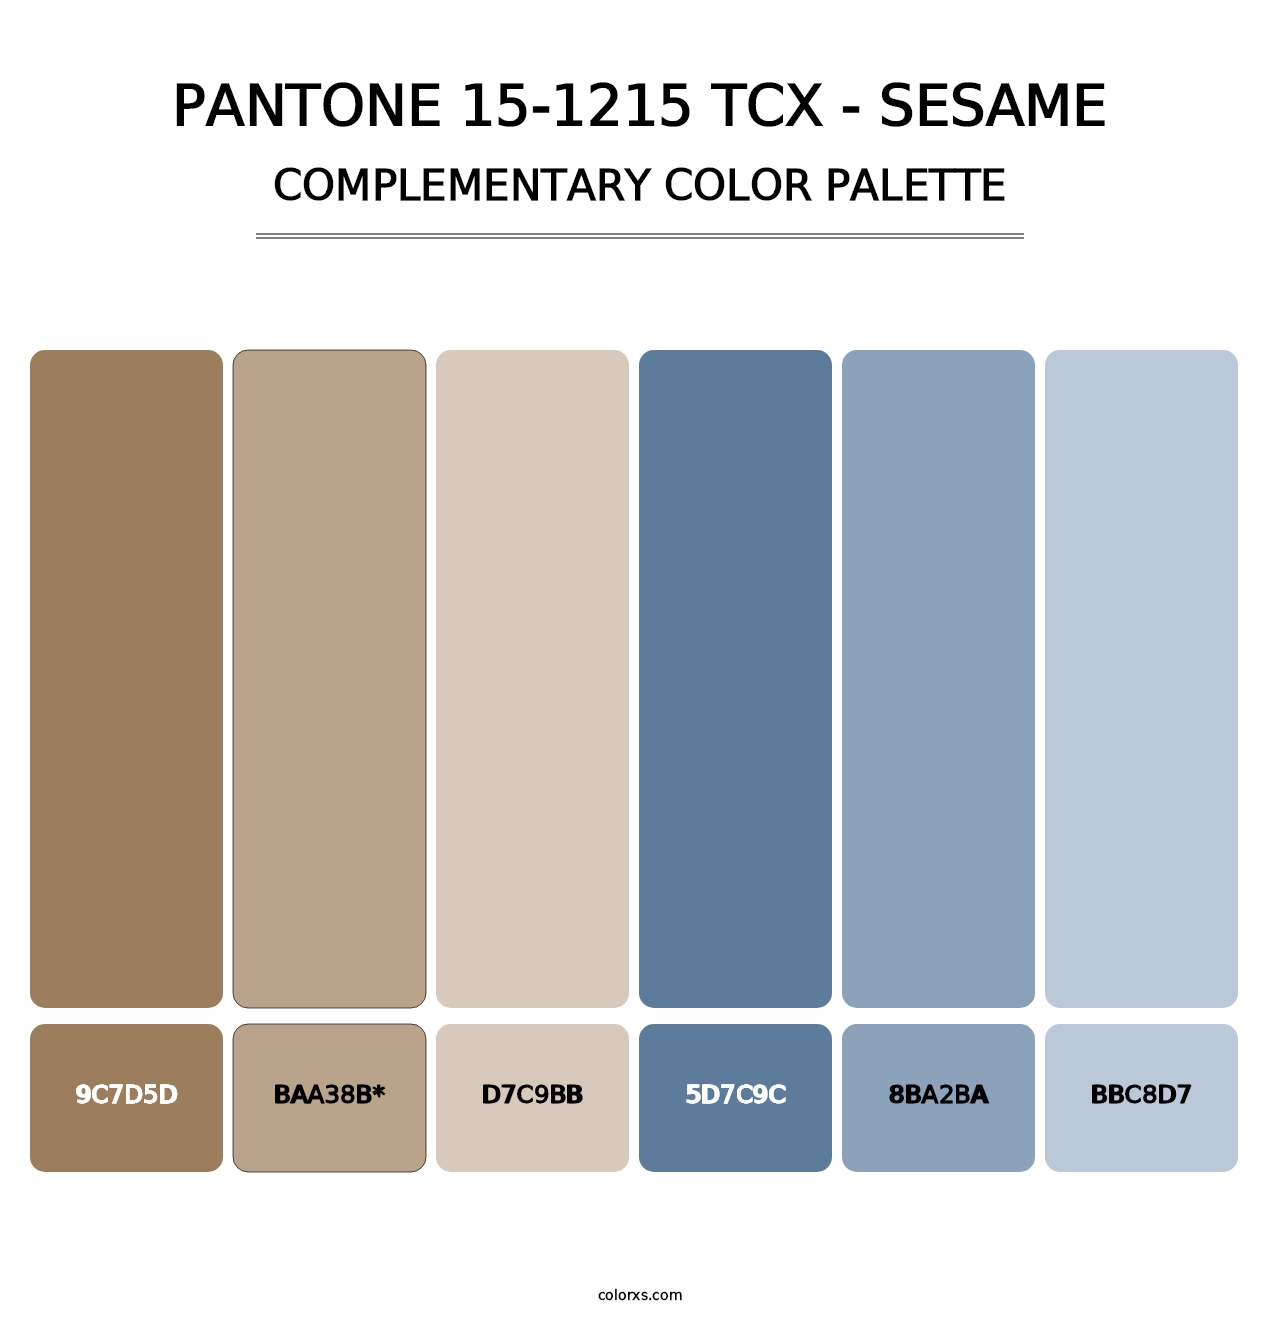 PANTONE 15-1215 TCX - Sesame - Complementary Color Palette